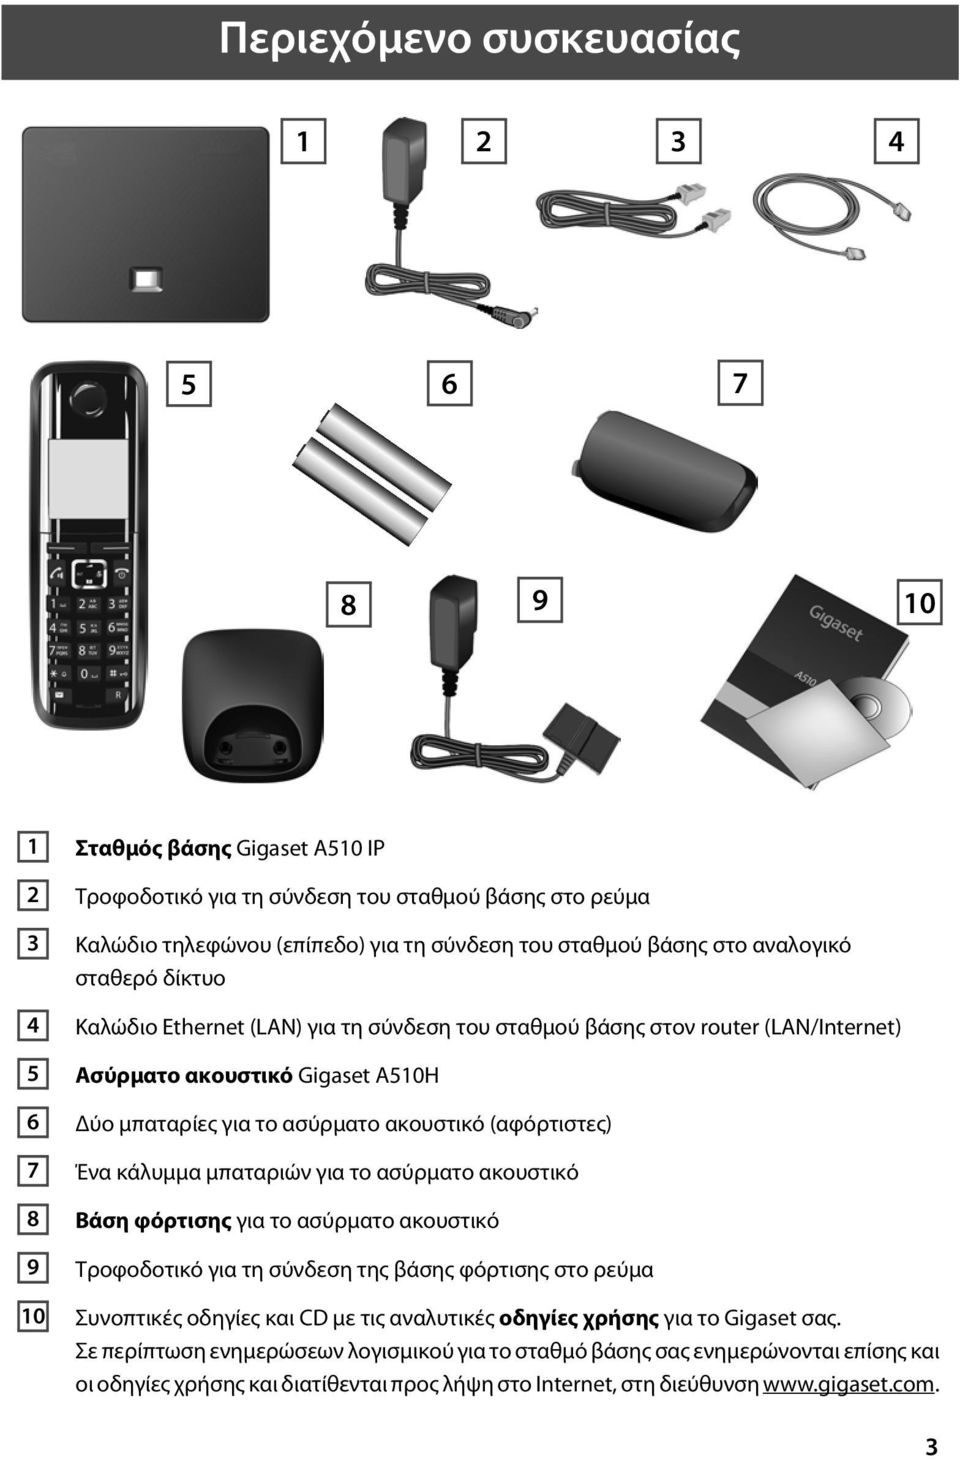 (αφόρτιστες) Ένα κάλυμμα μπαταριών για το ασύρματο ακουστικό Βάση φόρτισης για το ασύρματο ακουστικό Τροφοδοτικό για τη σύνδεση της βάσης φόρτισης στο ρεύμα Συνοπτικές οδηγίες και CD με τις